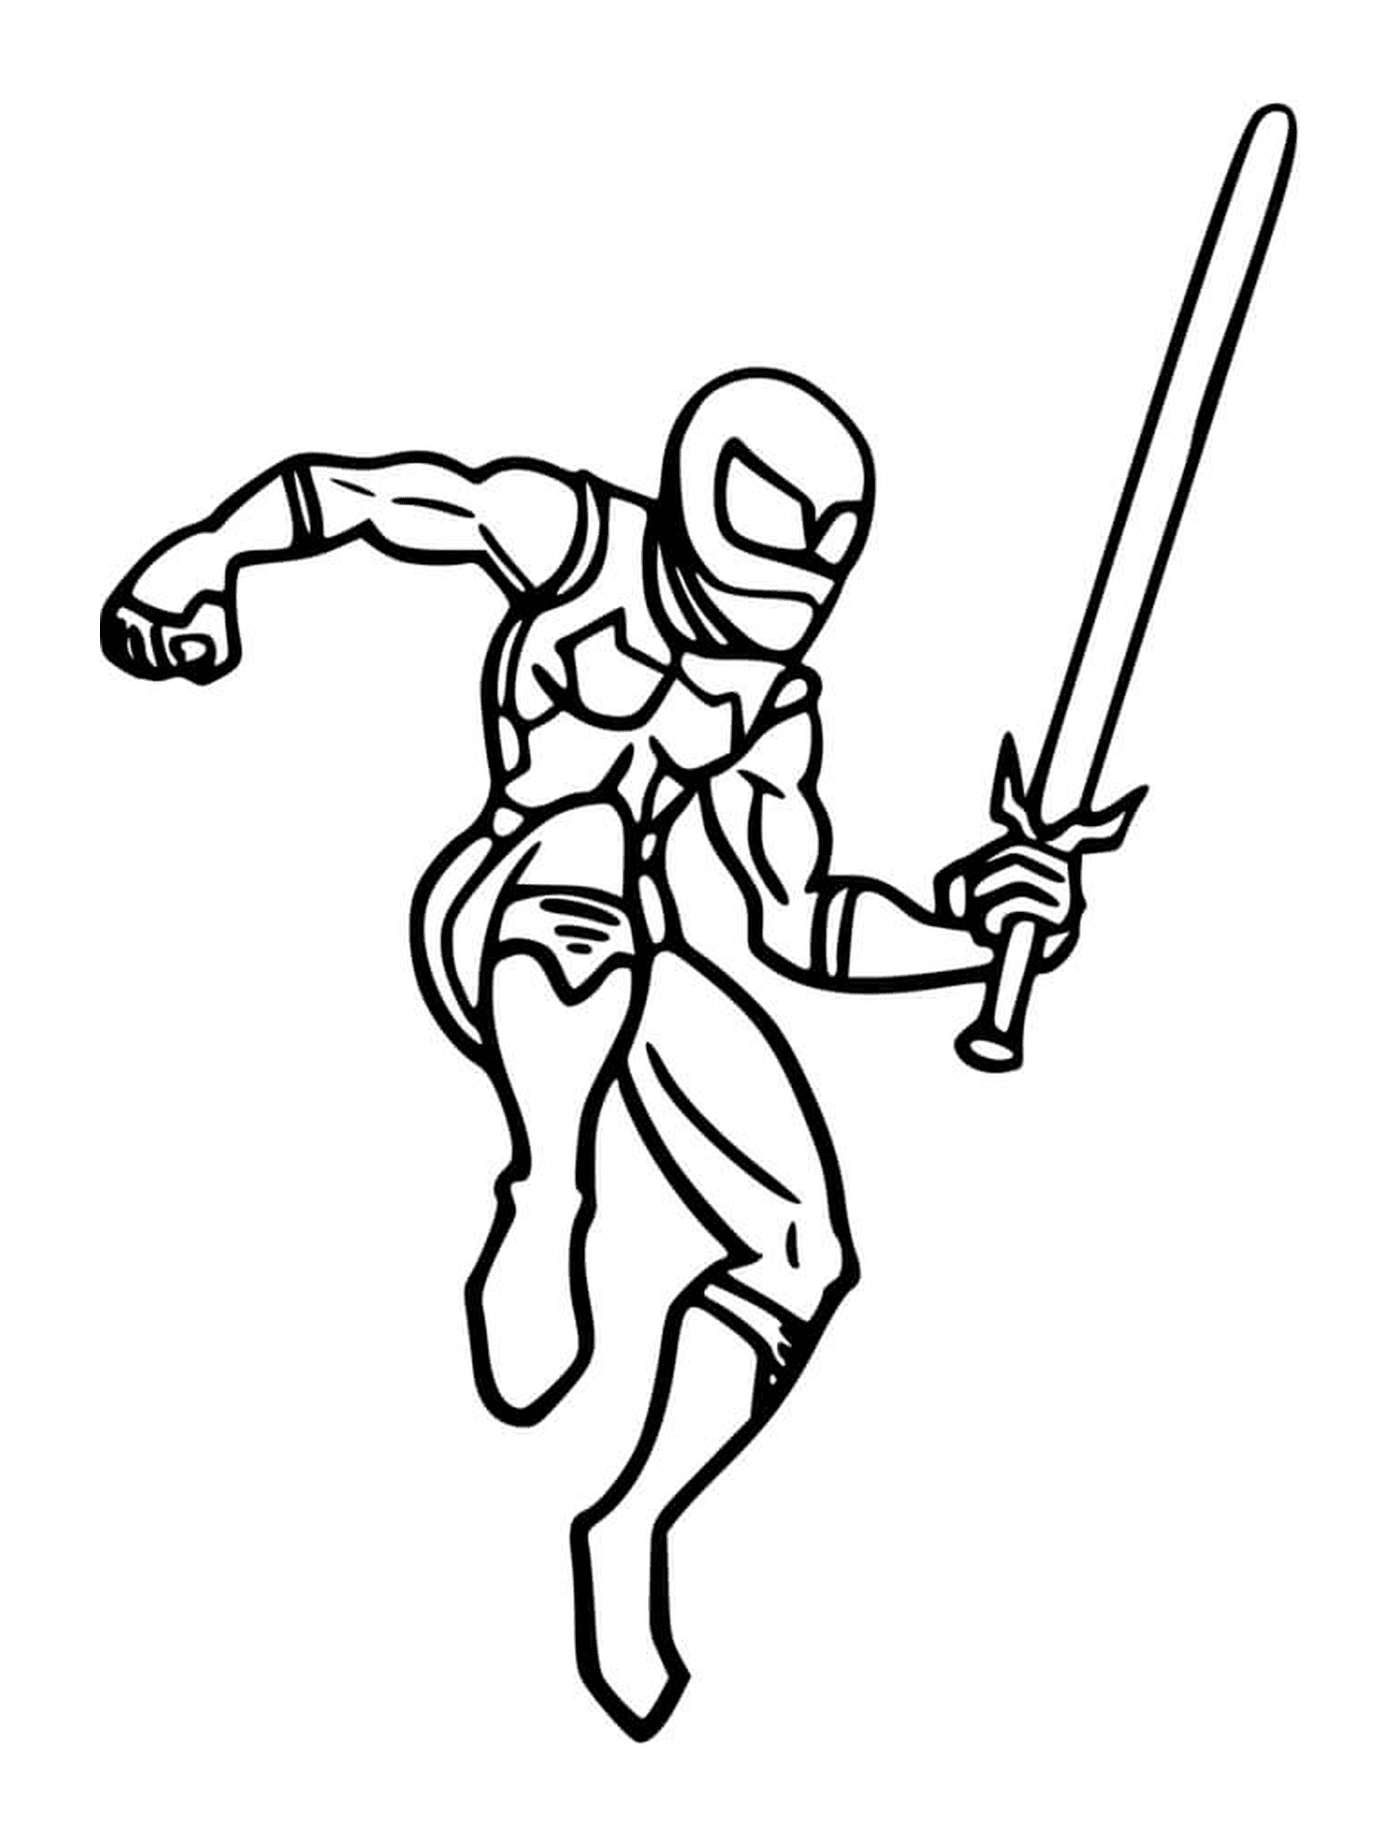  Ninja mit einem Schwert 